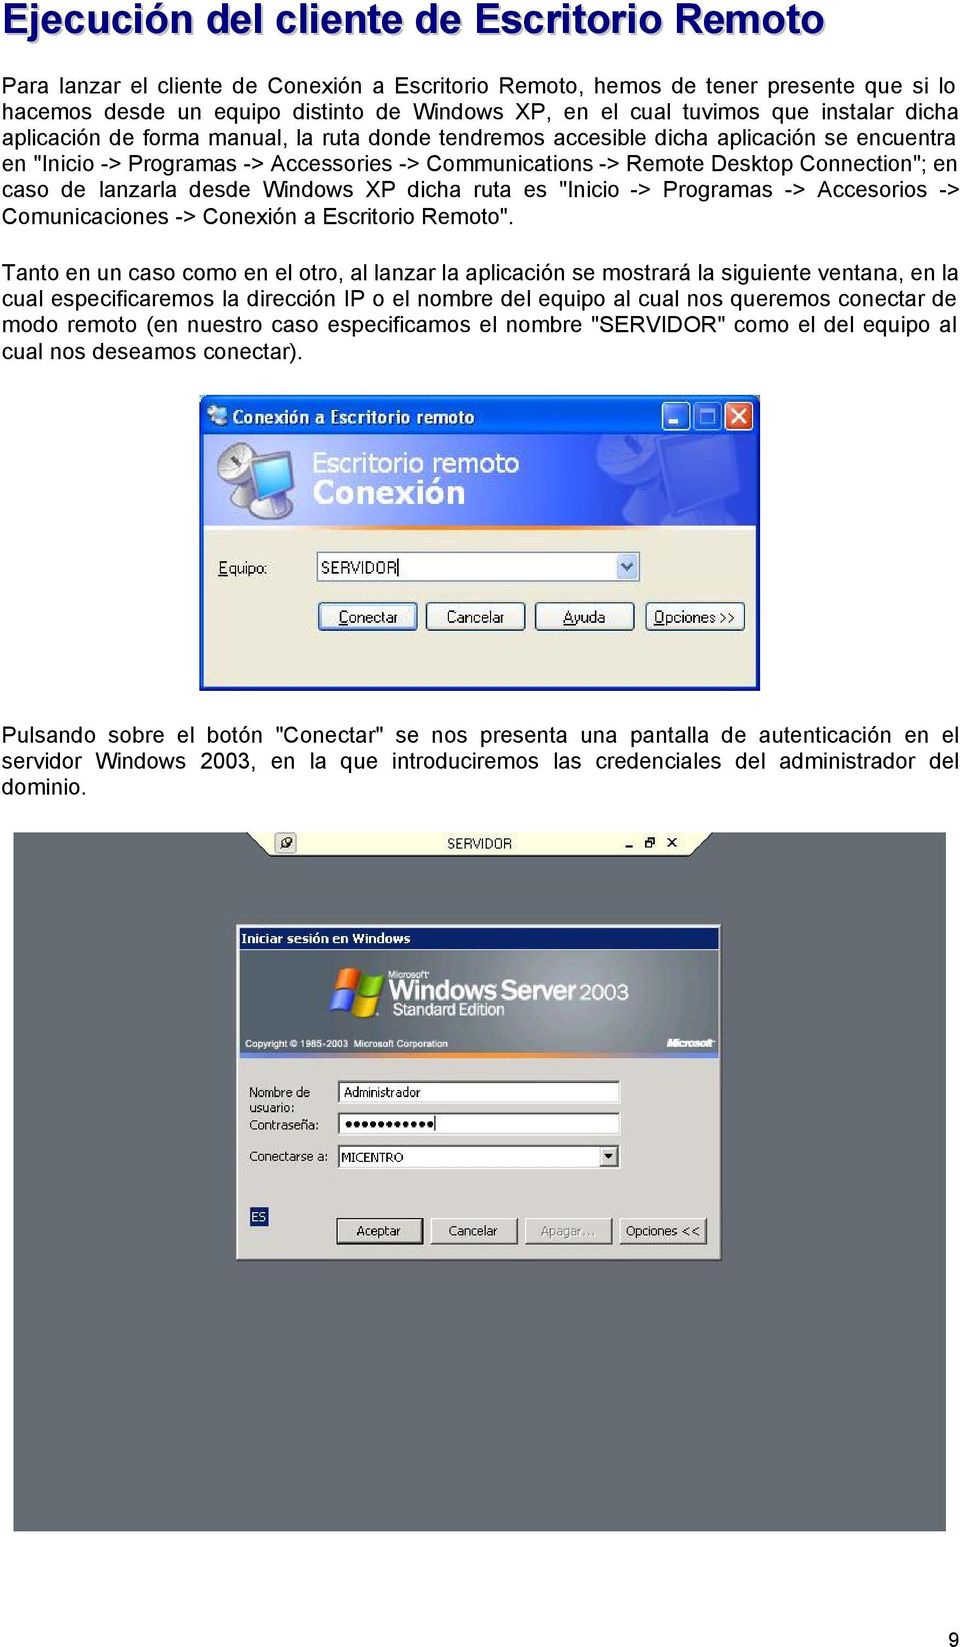 en caso de lanzarla desde Windows XP dicha ruta es "Inicio -> Programas -> Accesorios -> Comunicaciones -> Conexión a Escritorio Remoto".